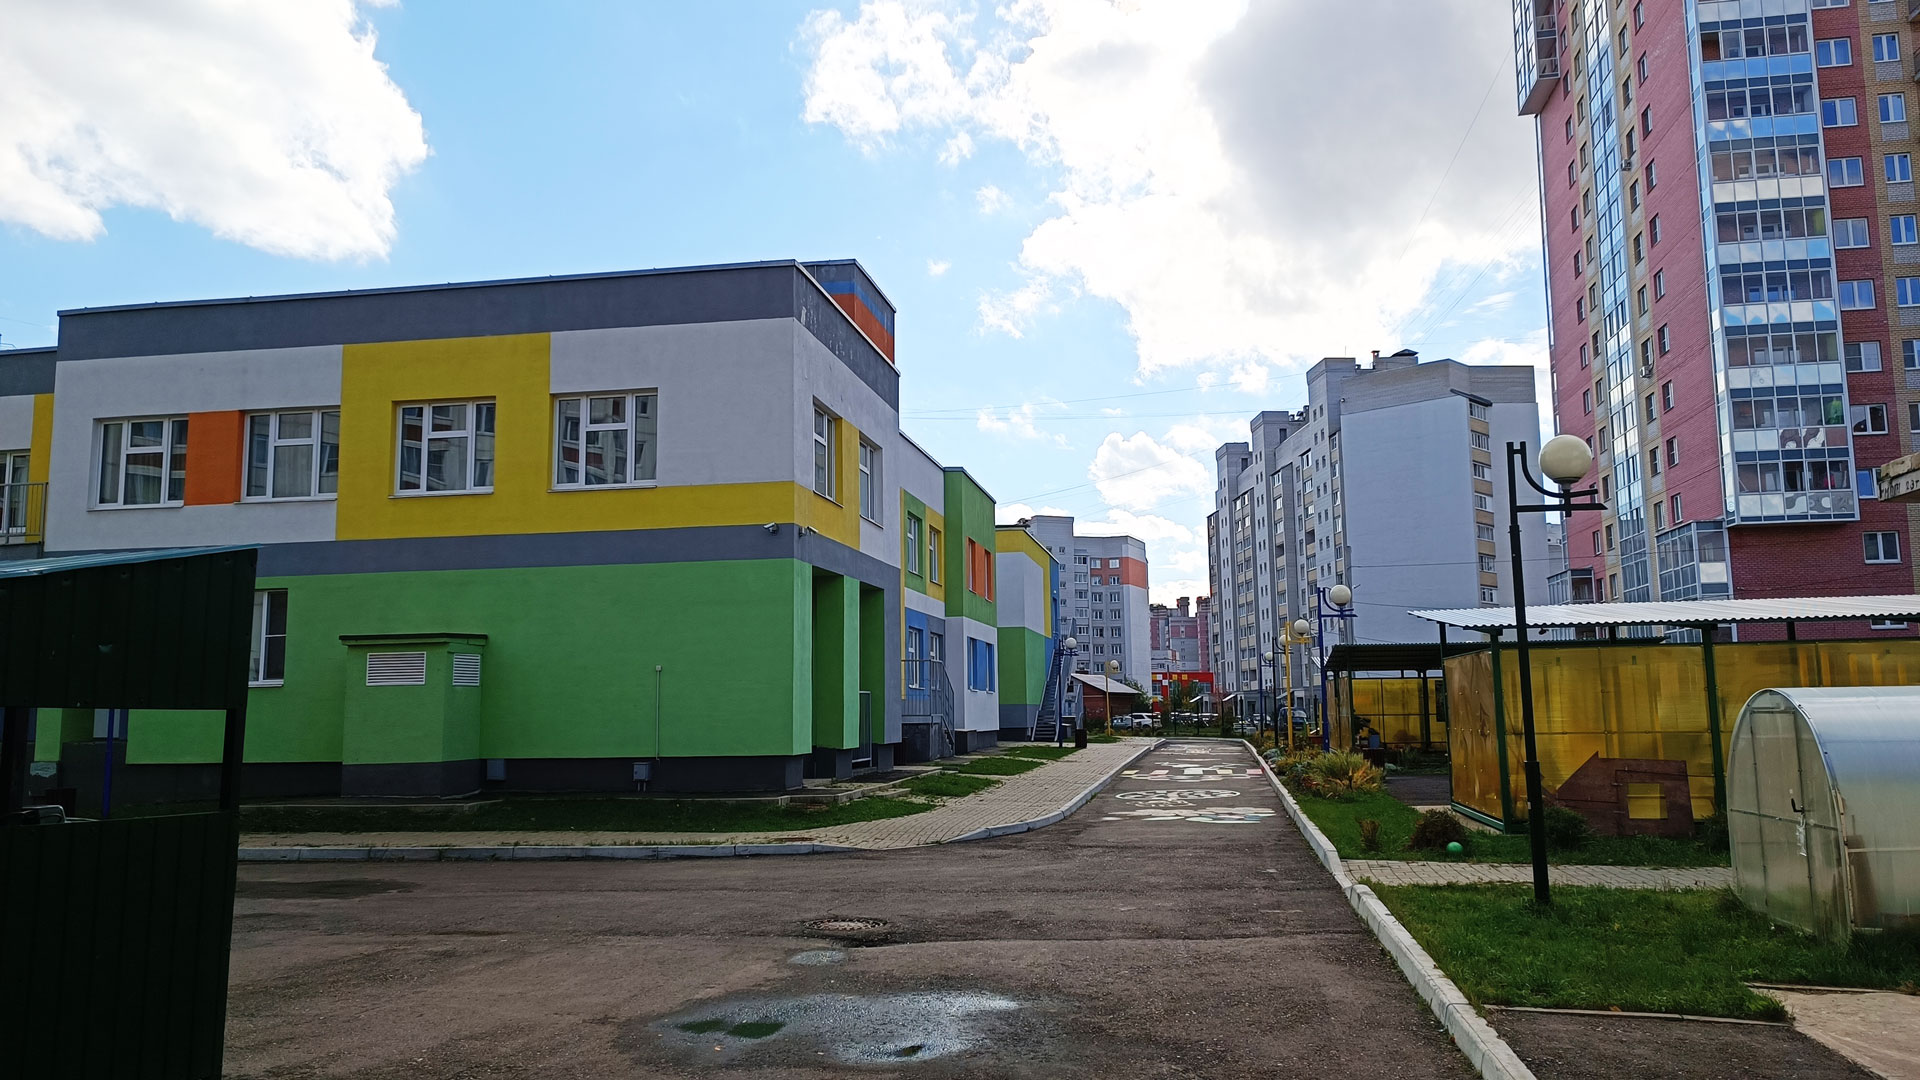 Детский сад 98 Ярославль: общий вид здания и территории.